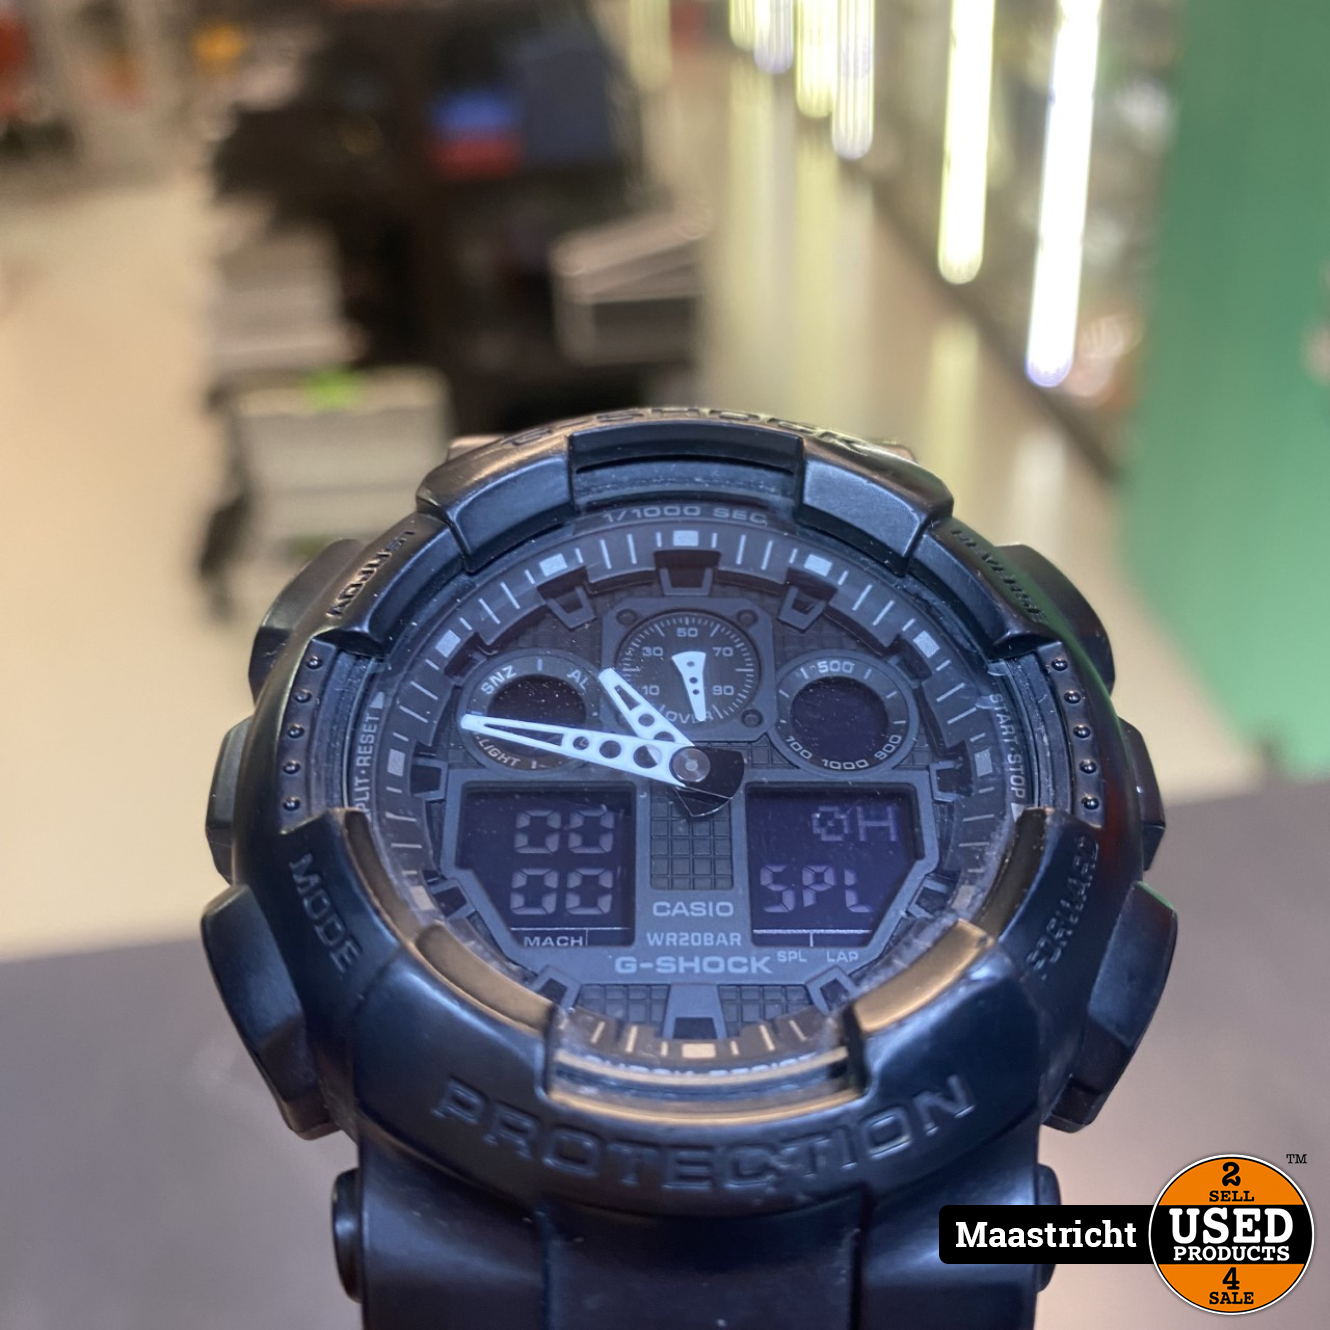 Gevestigde theorie maandelijks Oude man Casio G shock Horloge Zwart - Used Products Maastricht